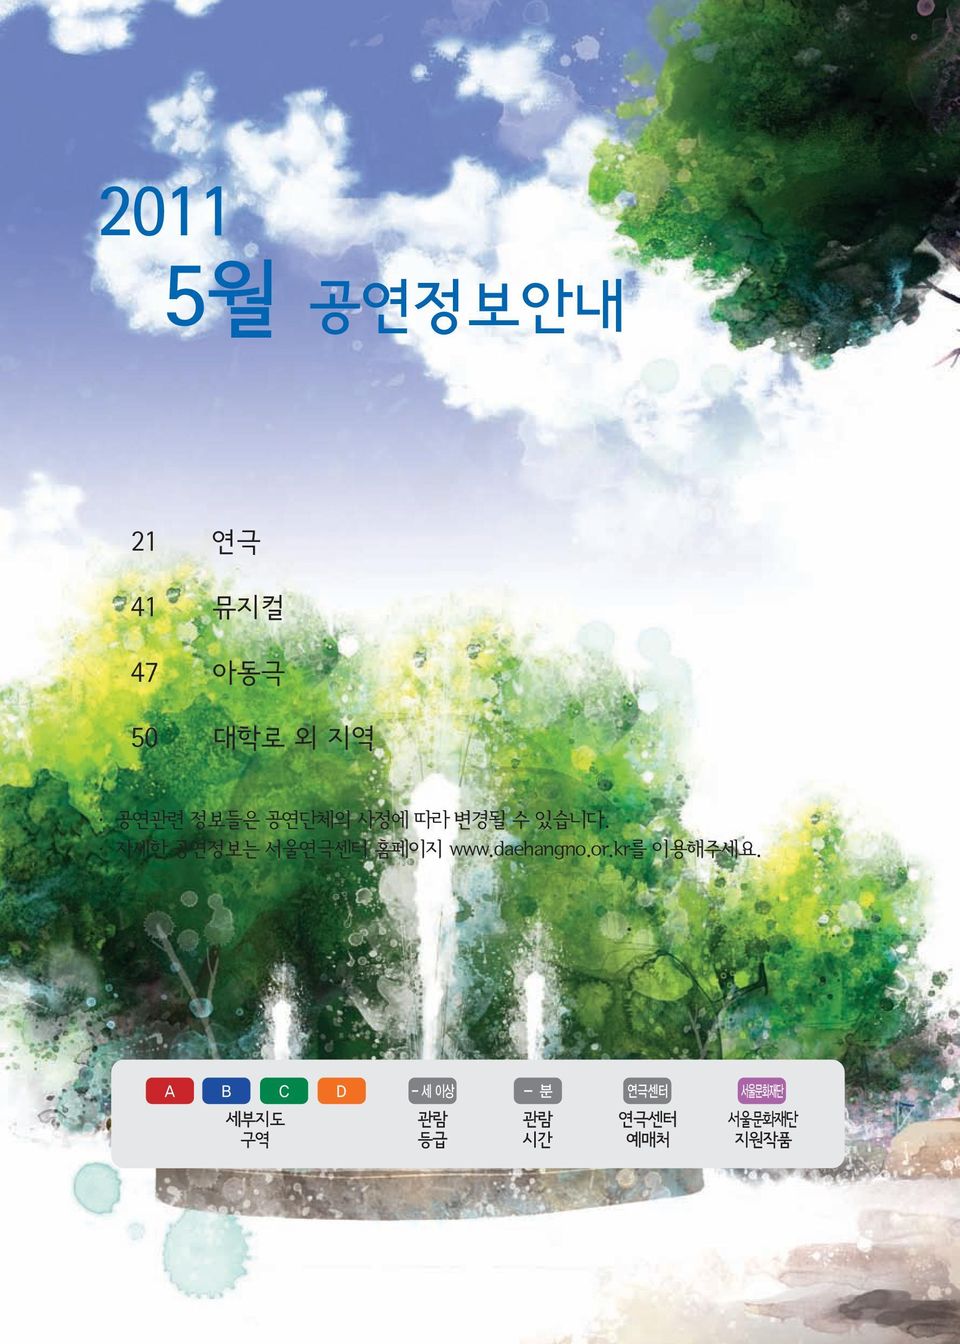 자세한 공연정보는 서울 홈페이지 www.daehangno.or.kr를 이용해주세요.